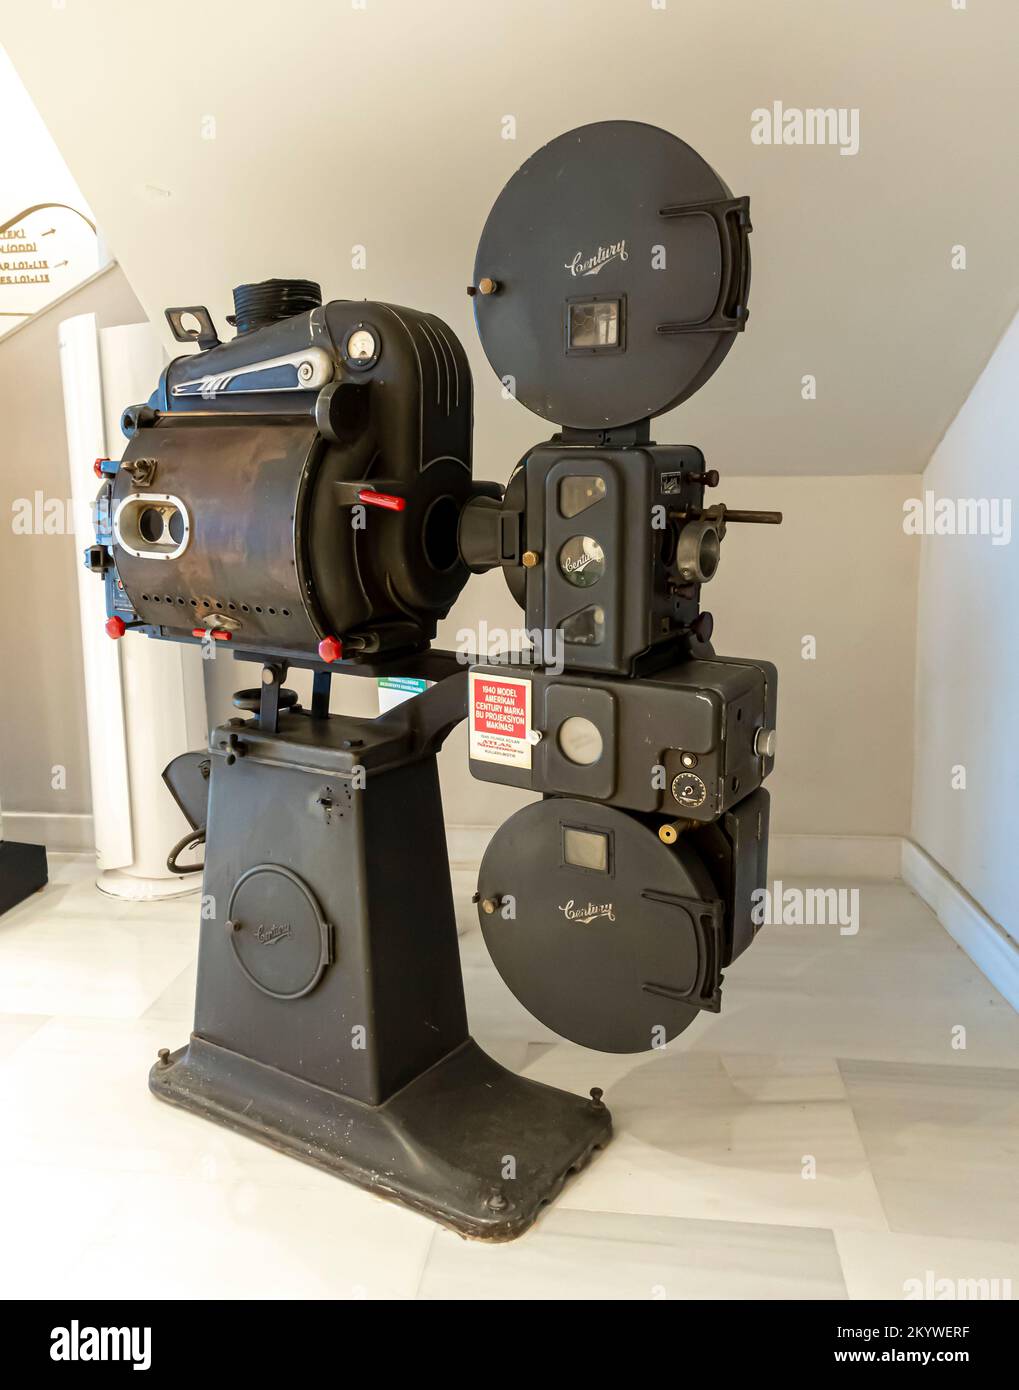 Ein alter alter 35-mm-Filmprojektor, der 1940 von Century, den Vereinigten Staaten, hergestellt wurde. Ausstellung im Atlas-Kino-Museum, Istanbul, Türkei Stockfoto